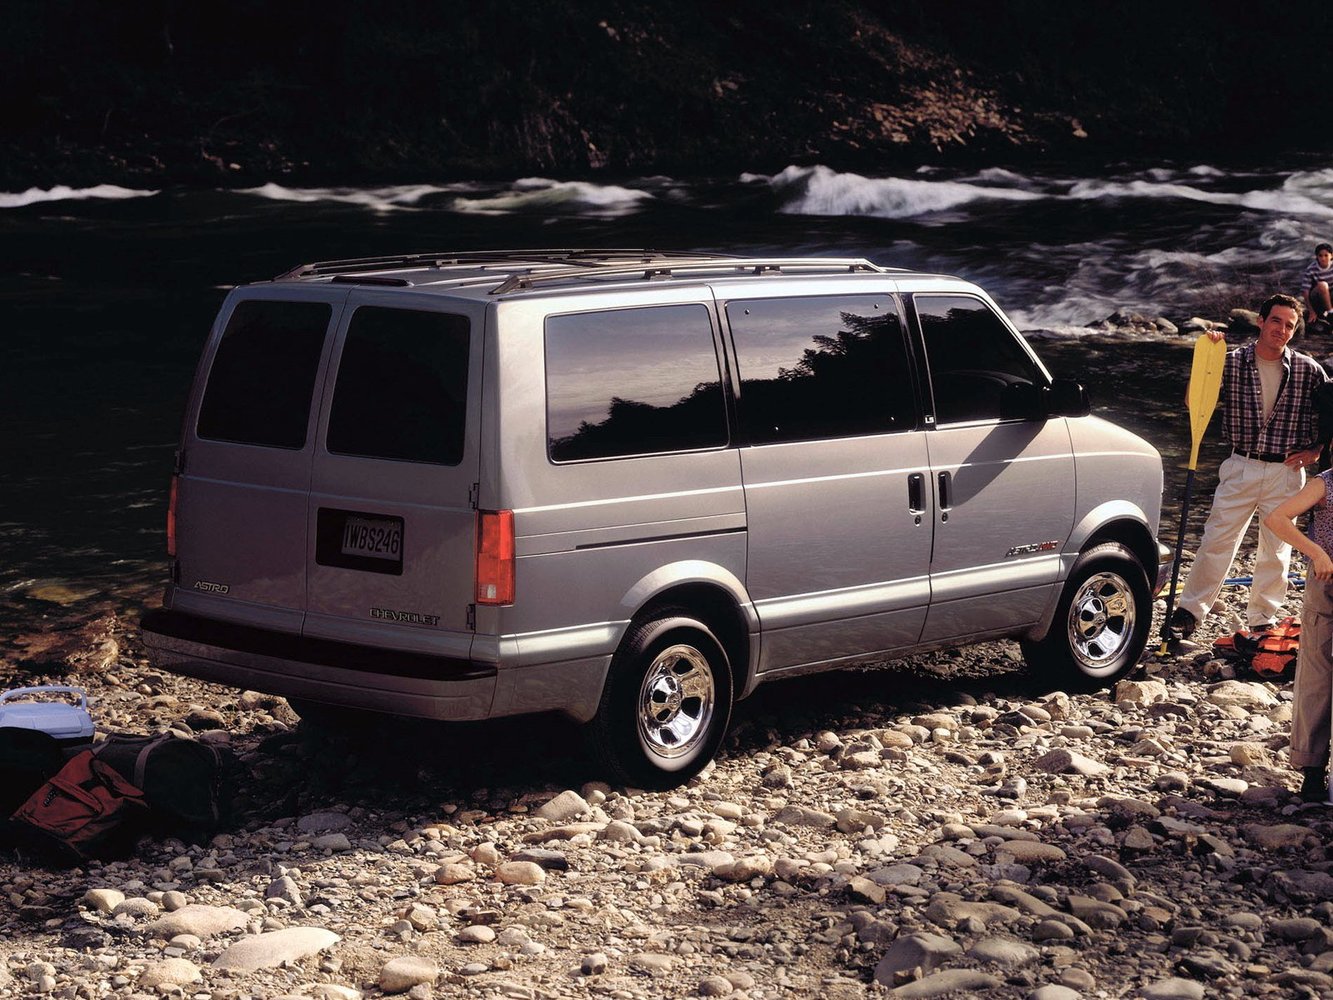 микроавтобус Chevrolet Astro 1985 - 2005г выпуска модификация 4.3 AT (163 л.с.)